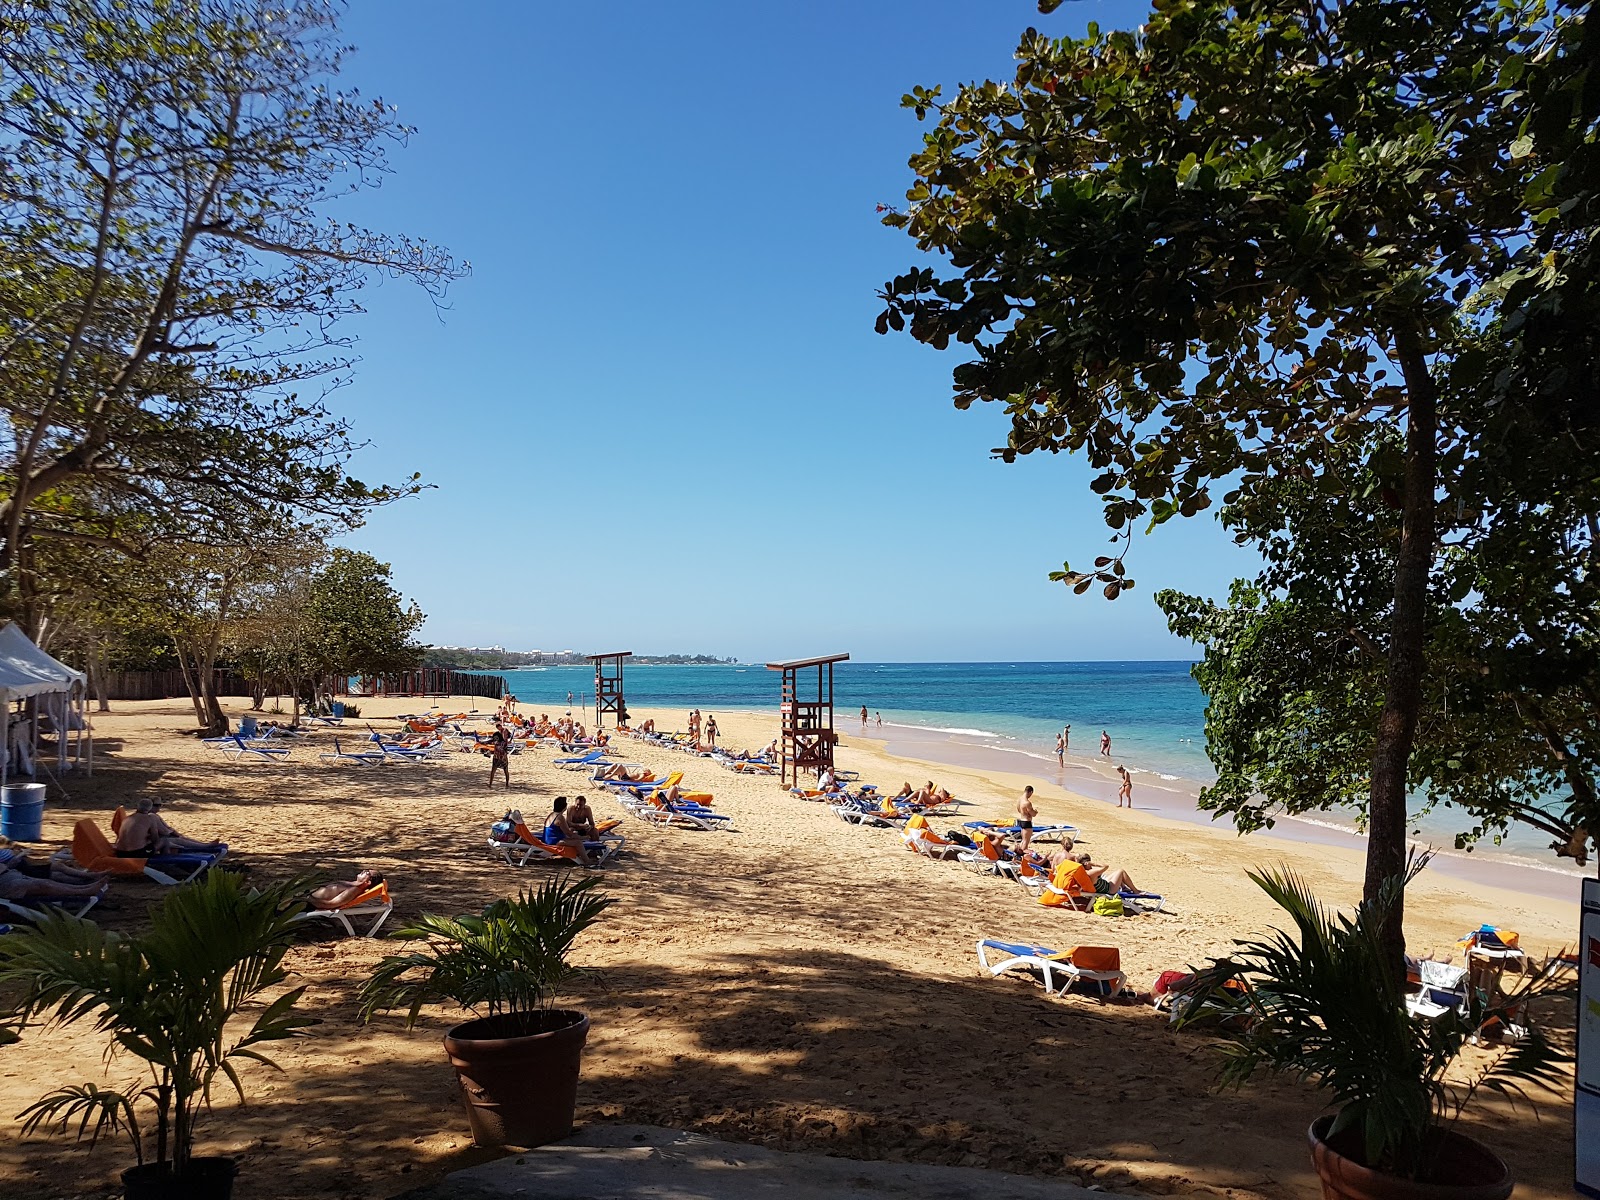 Fotografie cu Pearly beach - locul popular printre cunoscătorii de relaxare